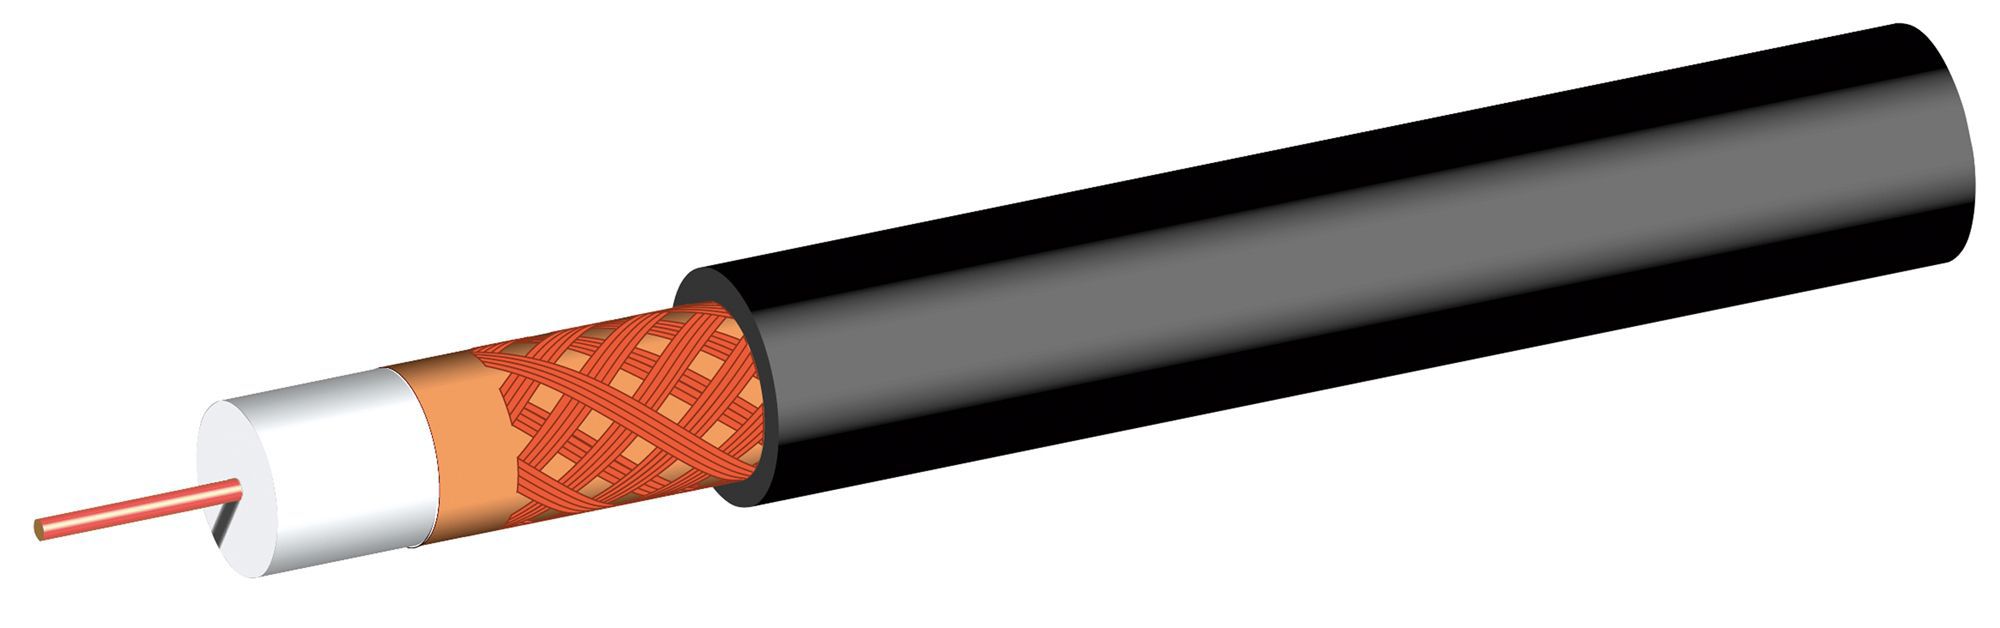 SLX Black Satellite cable, 25m